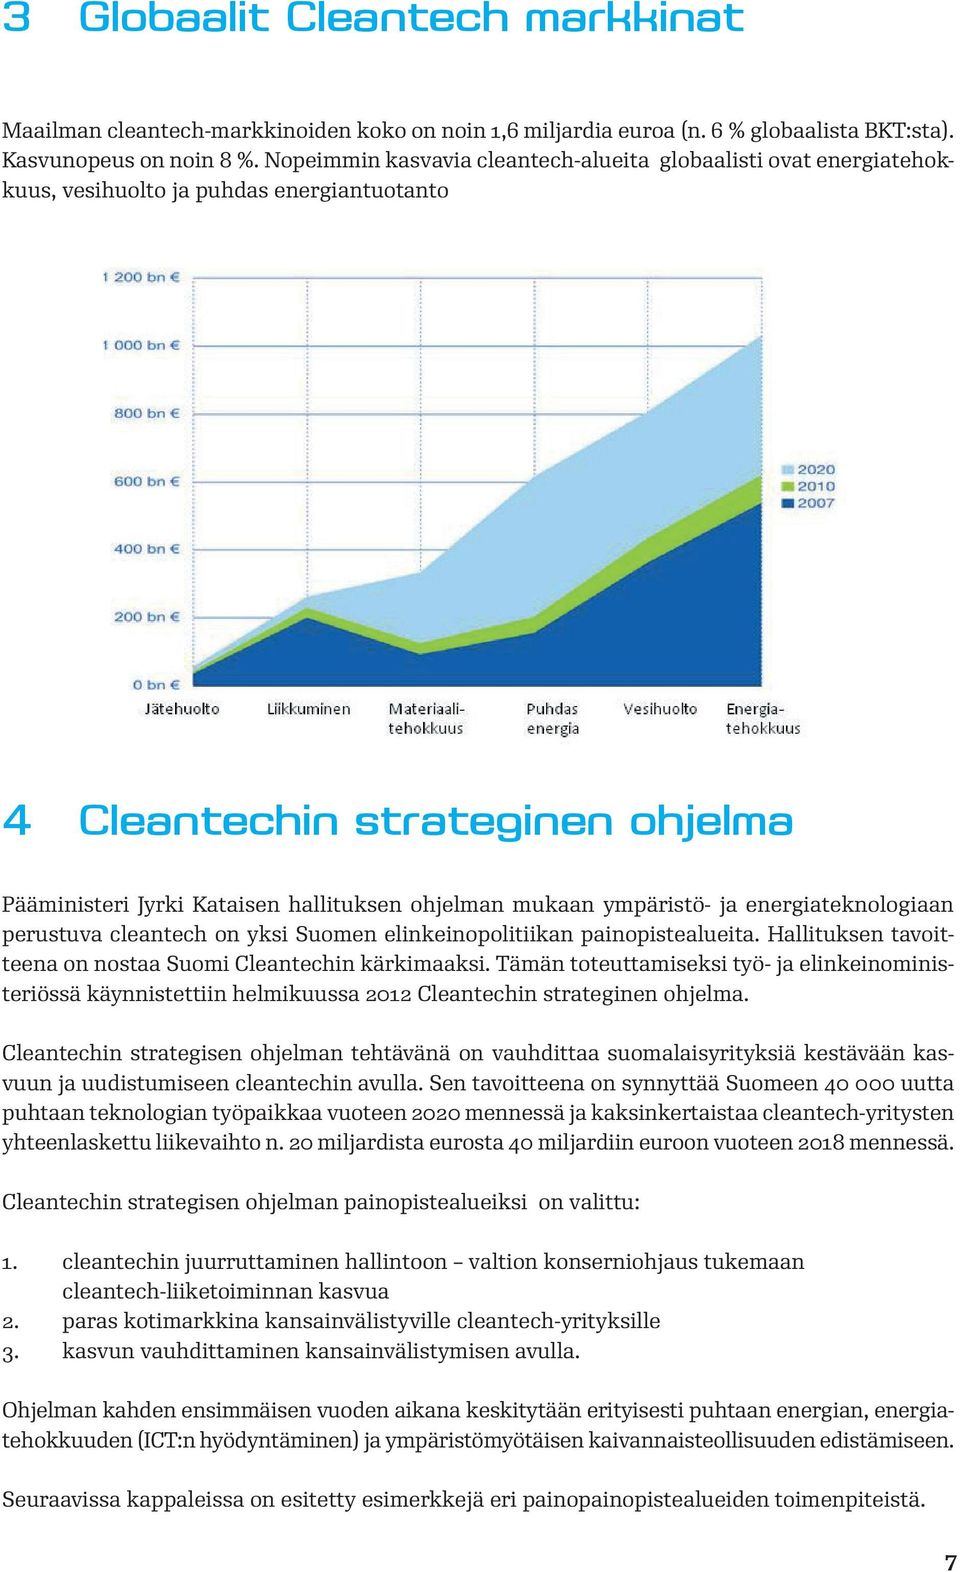 ympäristö- ja energiateknologiaan perustuva cleantech on yksi Suomen elinkeinopolitiikan painopistealueita. Hallituksen tavoitteena on nostaa Suomi Cleantechin kärkimaaksi.